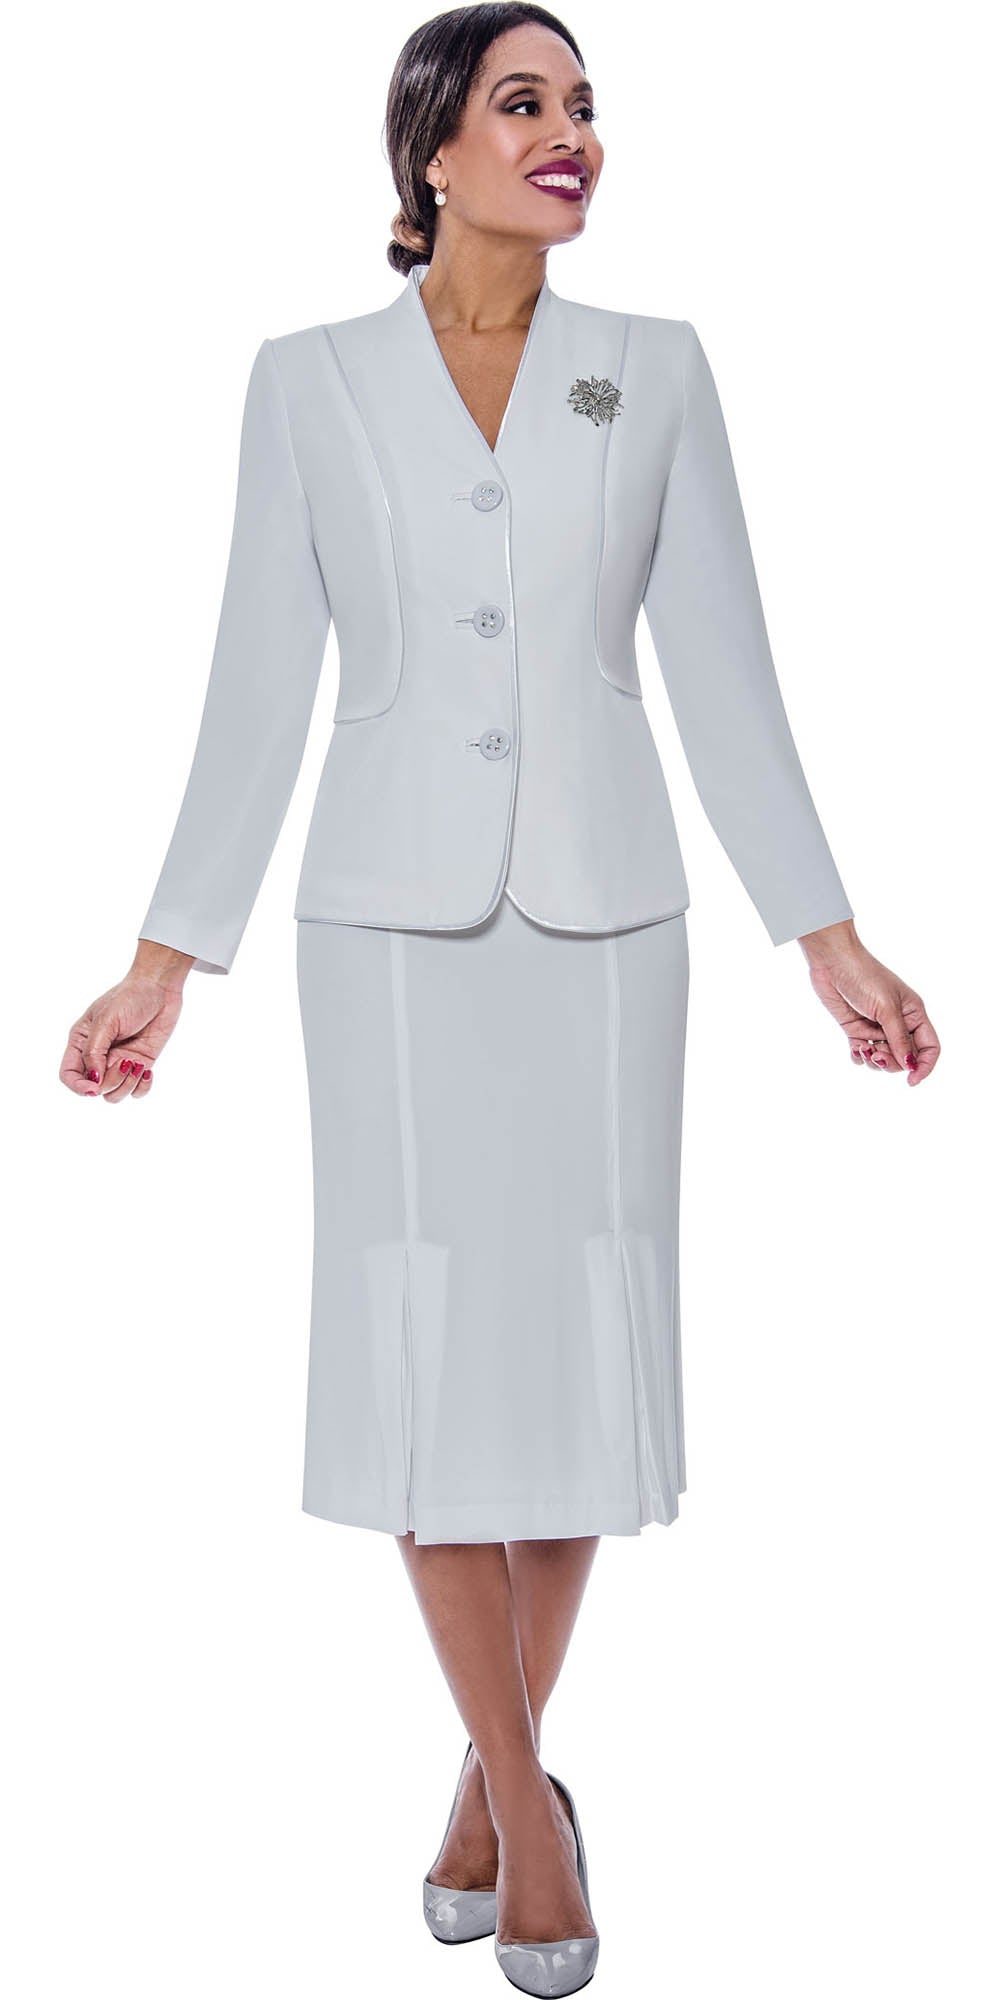 Ben Marc 78098-White - Modern Styled Suit For Women With Godet Skirt